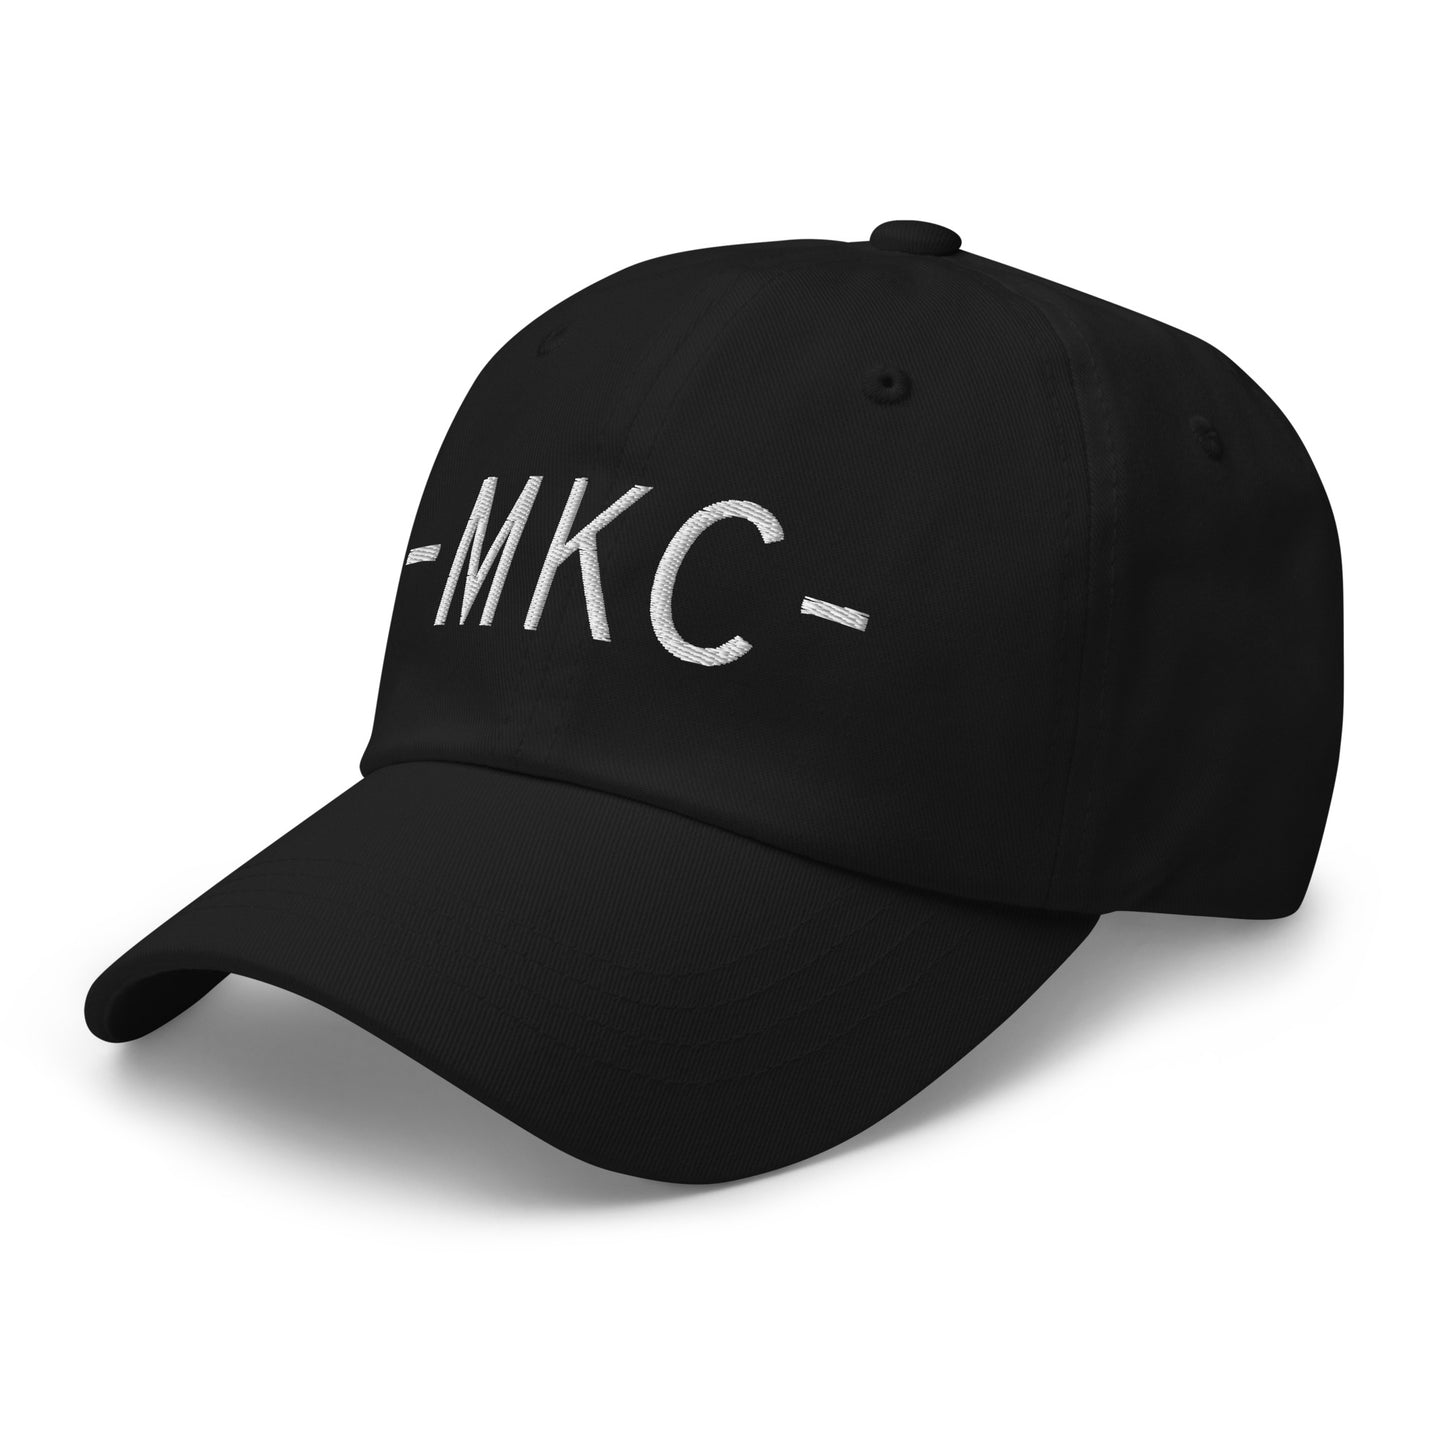 Souvenir Baseball Cap - White • MKC Kansas City • YHM Designs - Image 13